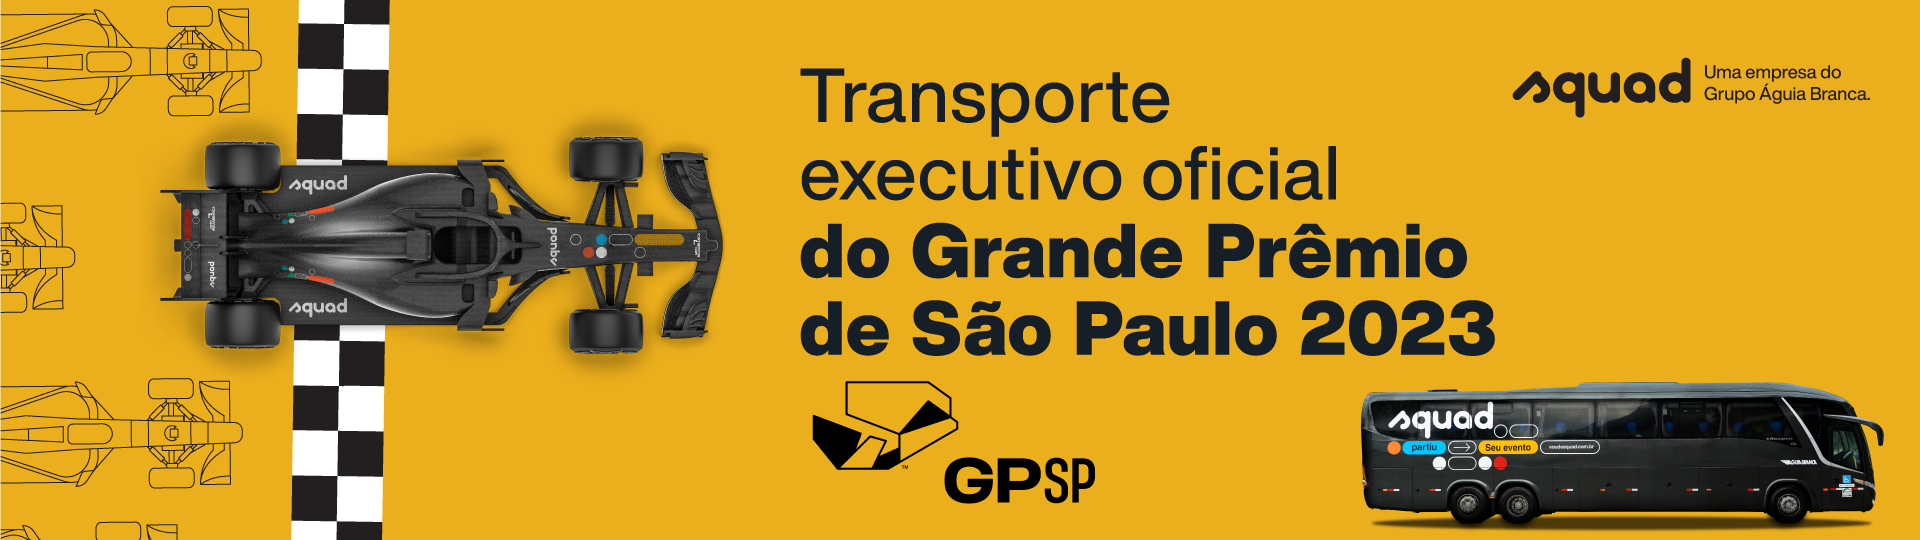 Transporte executivo oficial do Grande Prêmio de São Paulo 2023 - GPSP - SQUAD uma empresa do Grupo Águia Branca